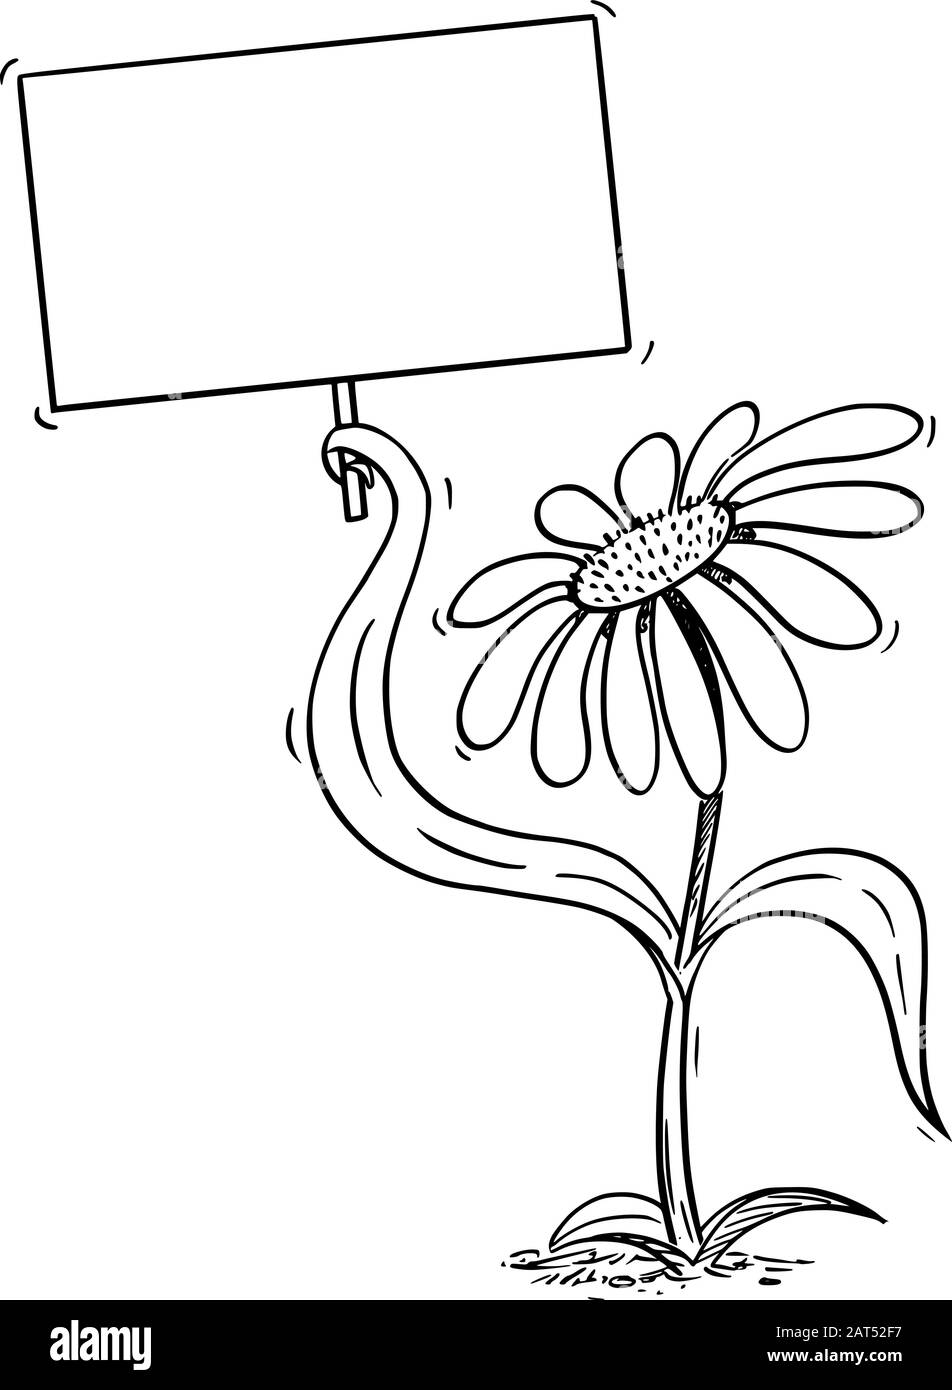 Illustration vectorielle du personnage de la marguerite à fleurs de la bande dessinée contenant un signe vide dans la feuille. Publicité écologique ou de nature ou conception marketing. Illustration de Vecteur